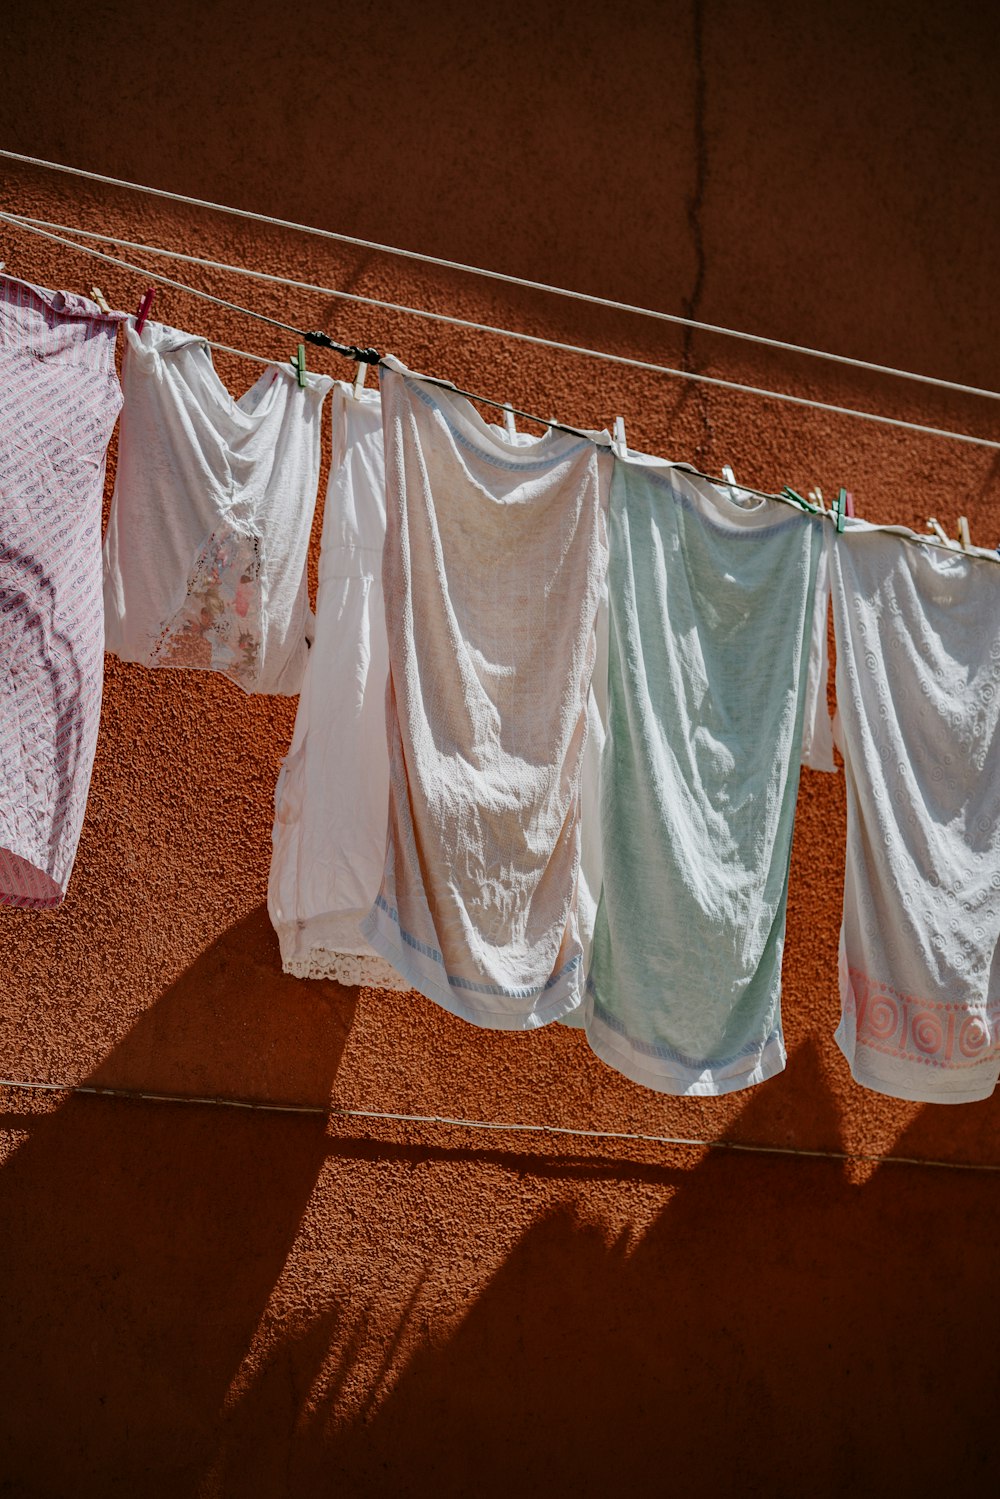 Kleidungsstücke in verschiedenen Farben, die an einer Wäscheleine aufgehängt sind